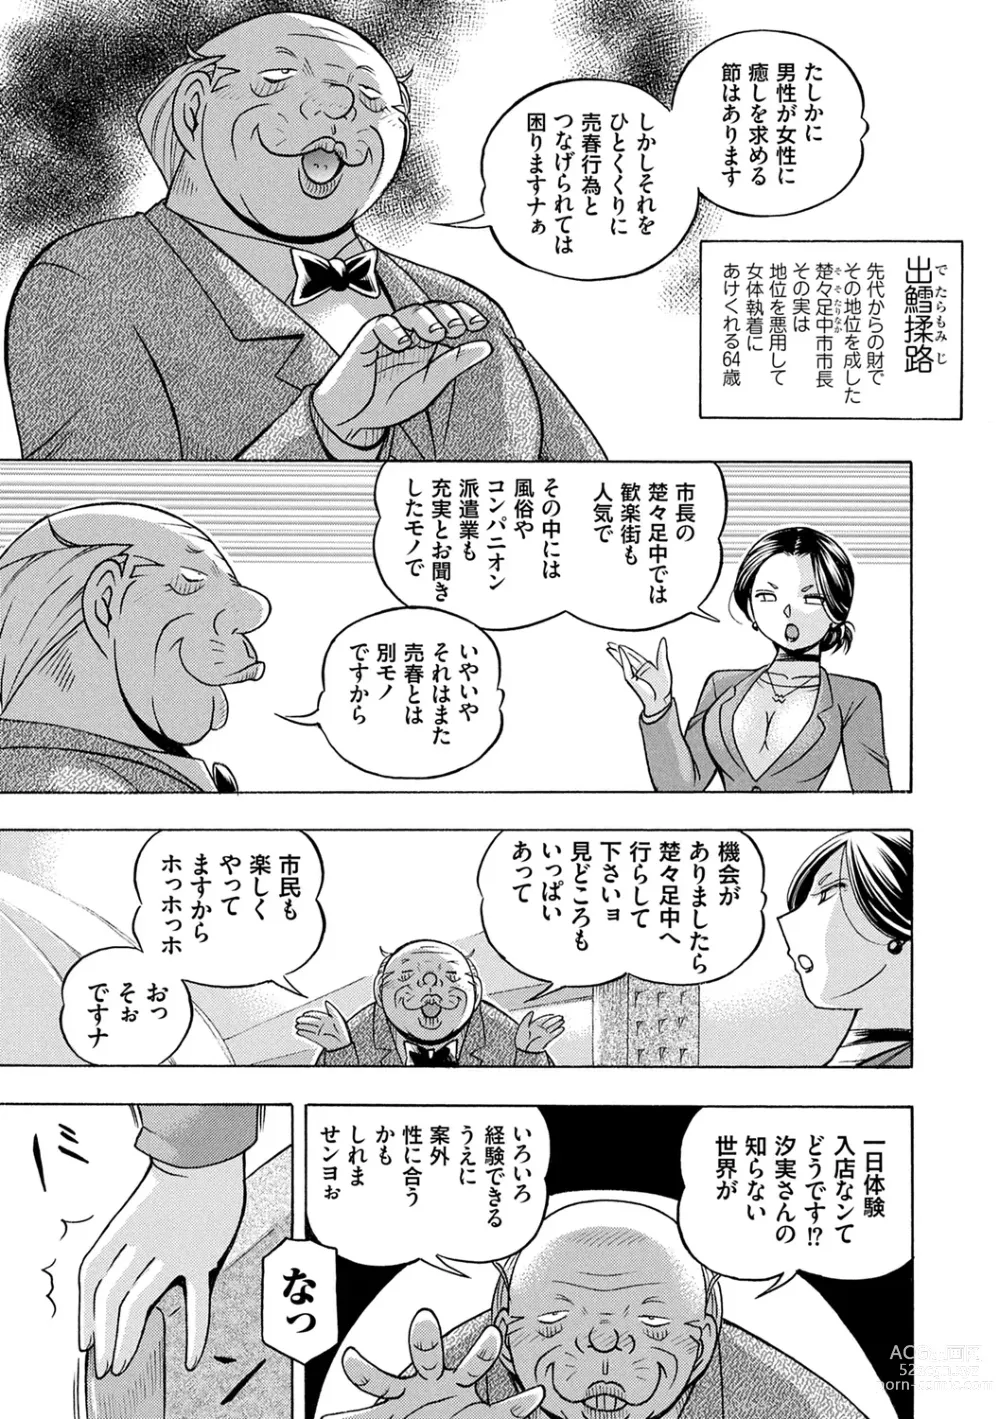 Page 7 of manga Jiyunkyouju Asako ~Bi Niku Hisho Ka~